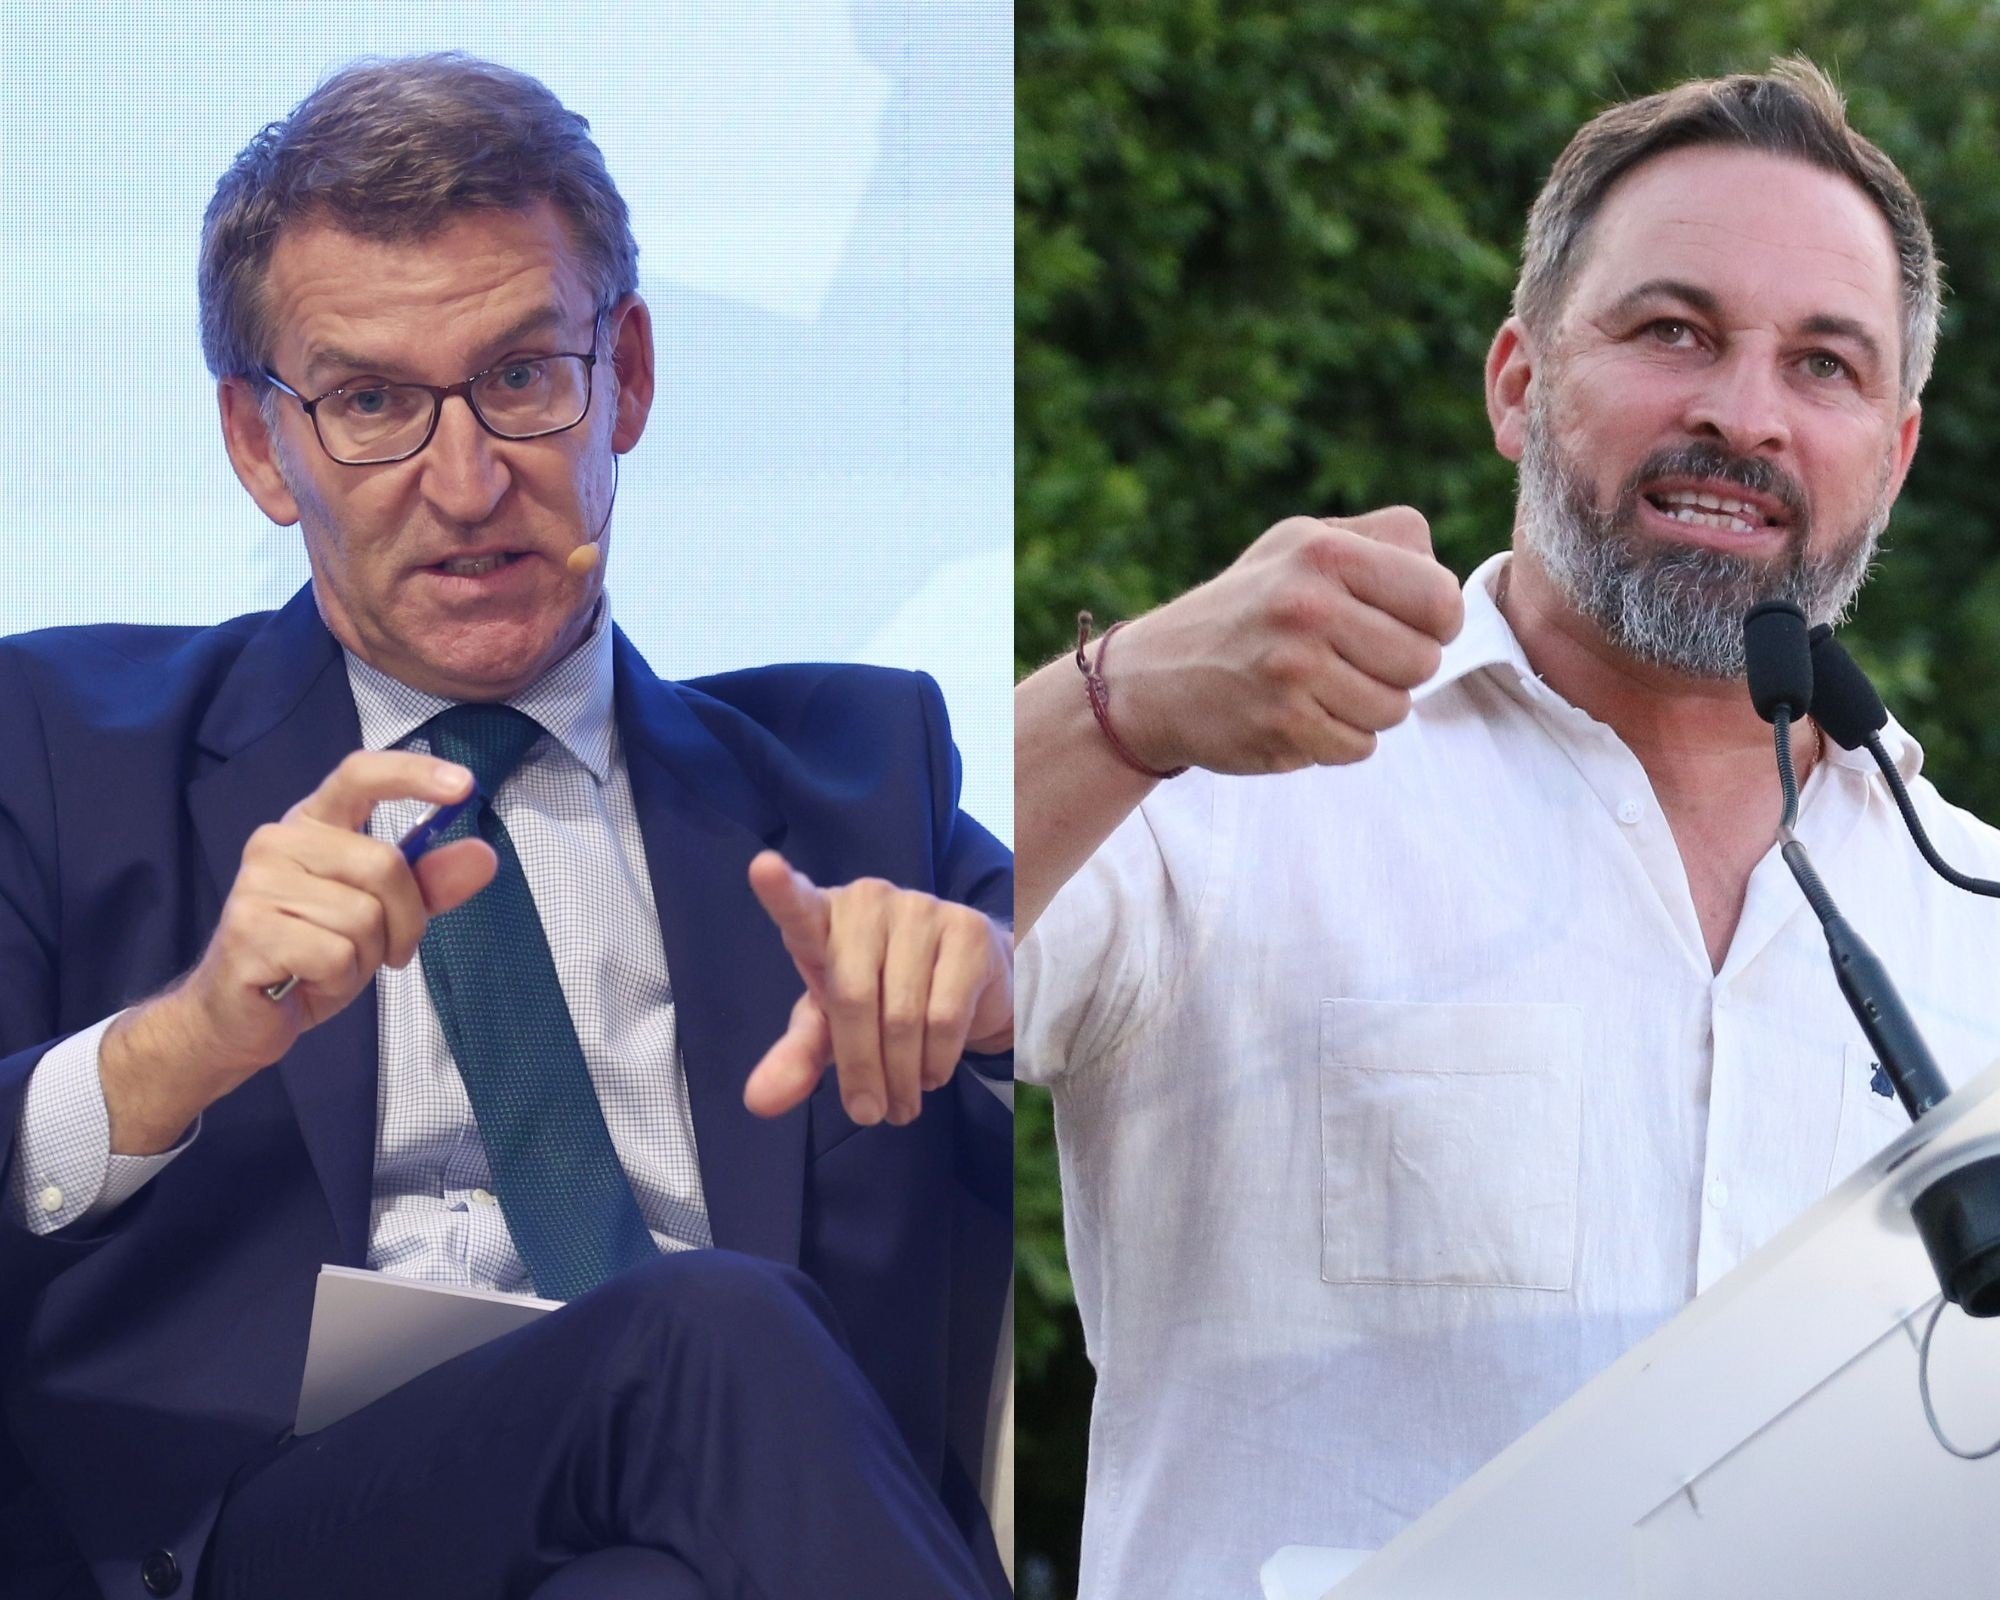 Primera reunió privada entre Núñez Feijóo i Santiago Abascal: “Correcta i dins la normalitat”